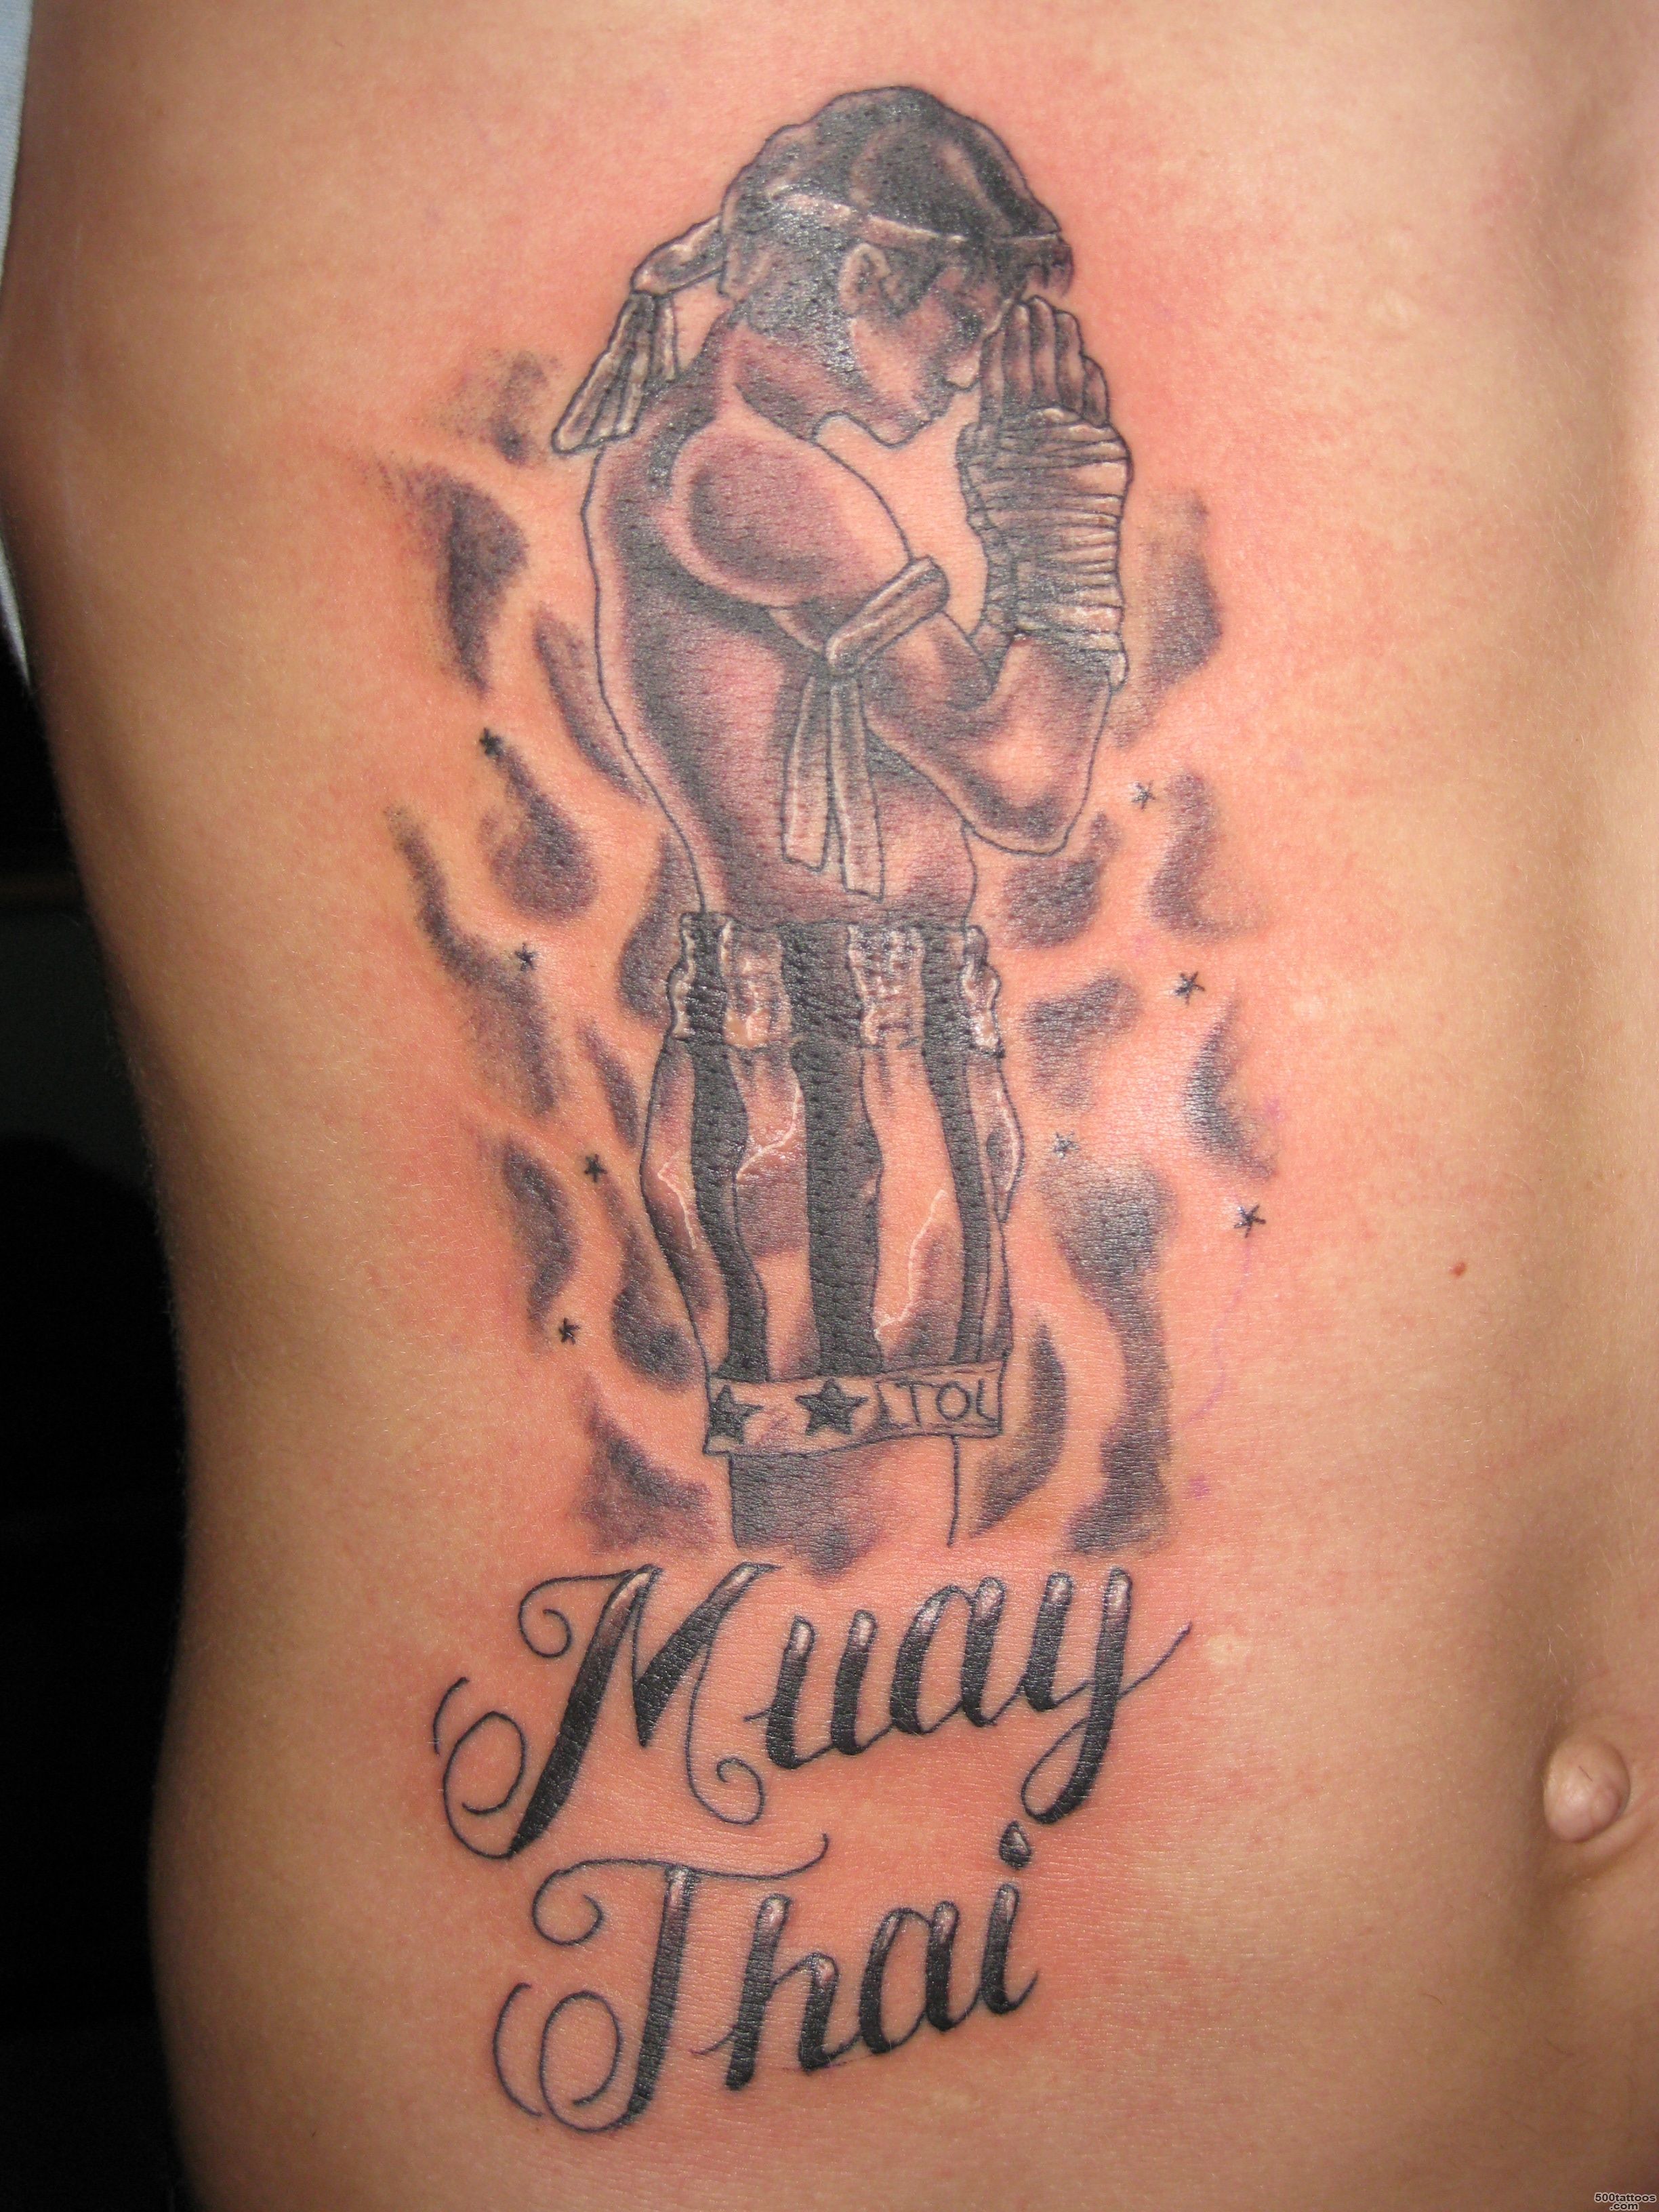 Pin Kickboxing Tattoo Ax Muay Thai on Pinterest_5